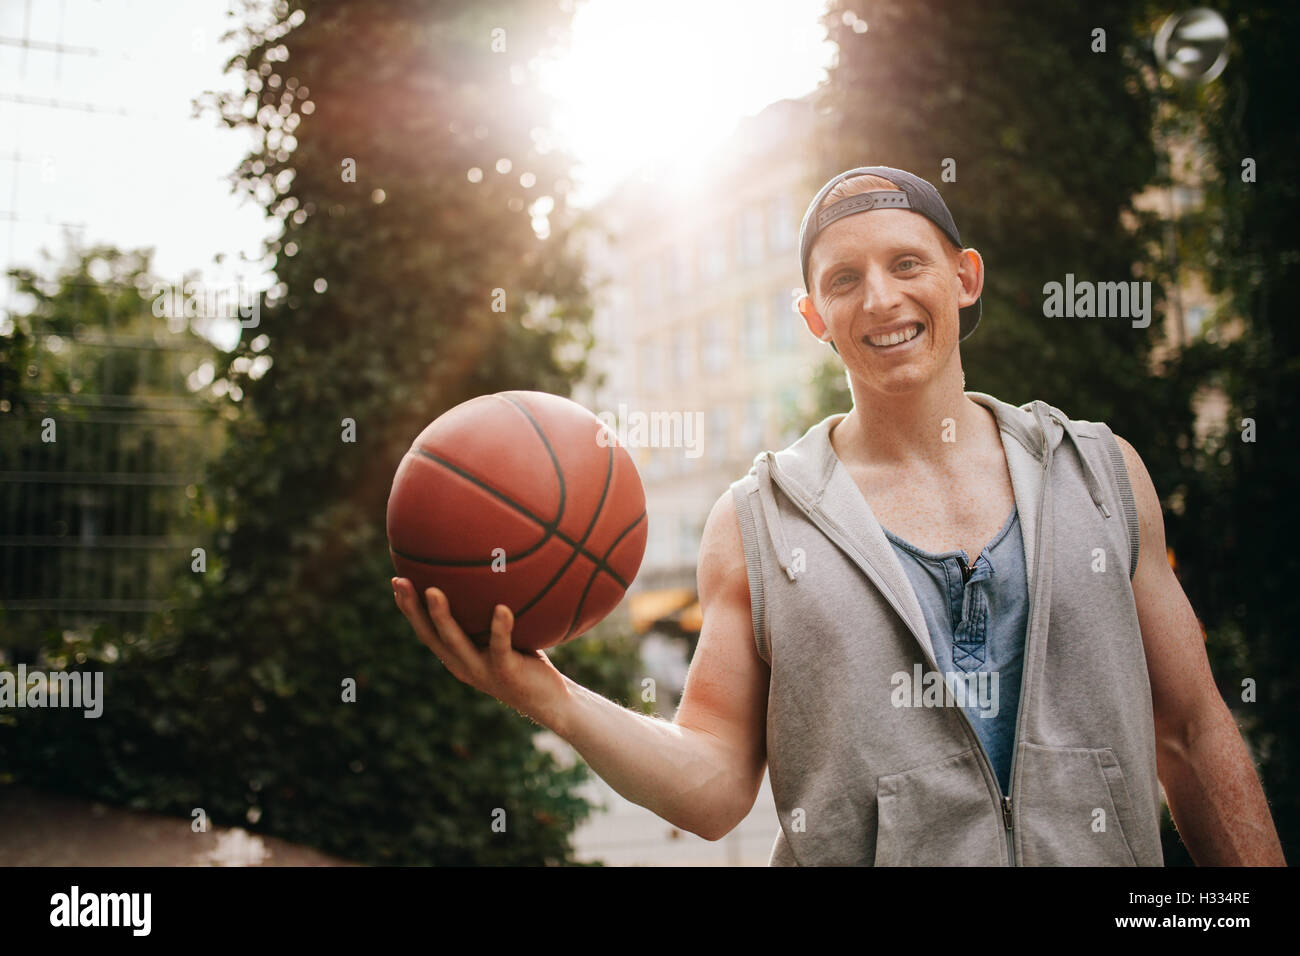 Portrait of a young man holding a basket-ball extérieur sur cour. Teenage guy looking at camera avec un ballon en main. Banque D'Images